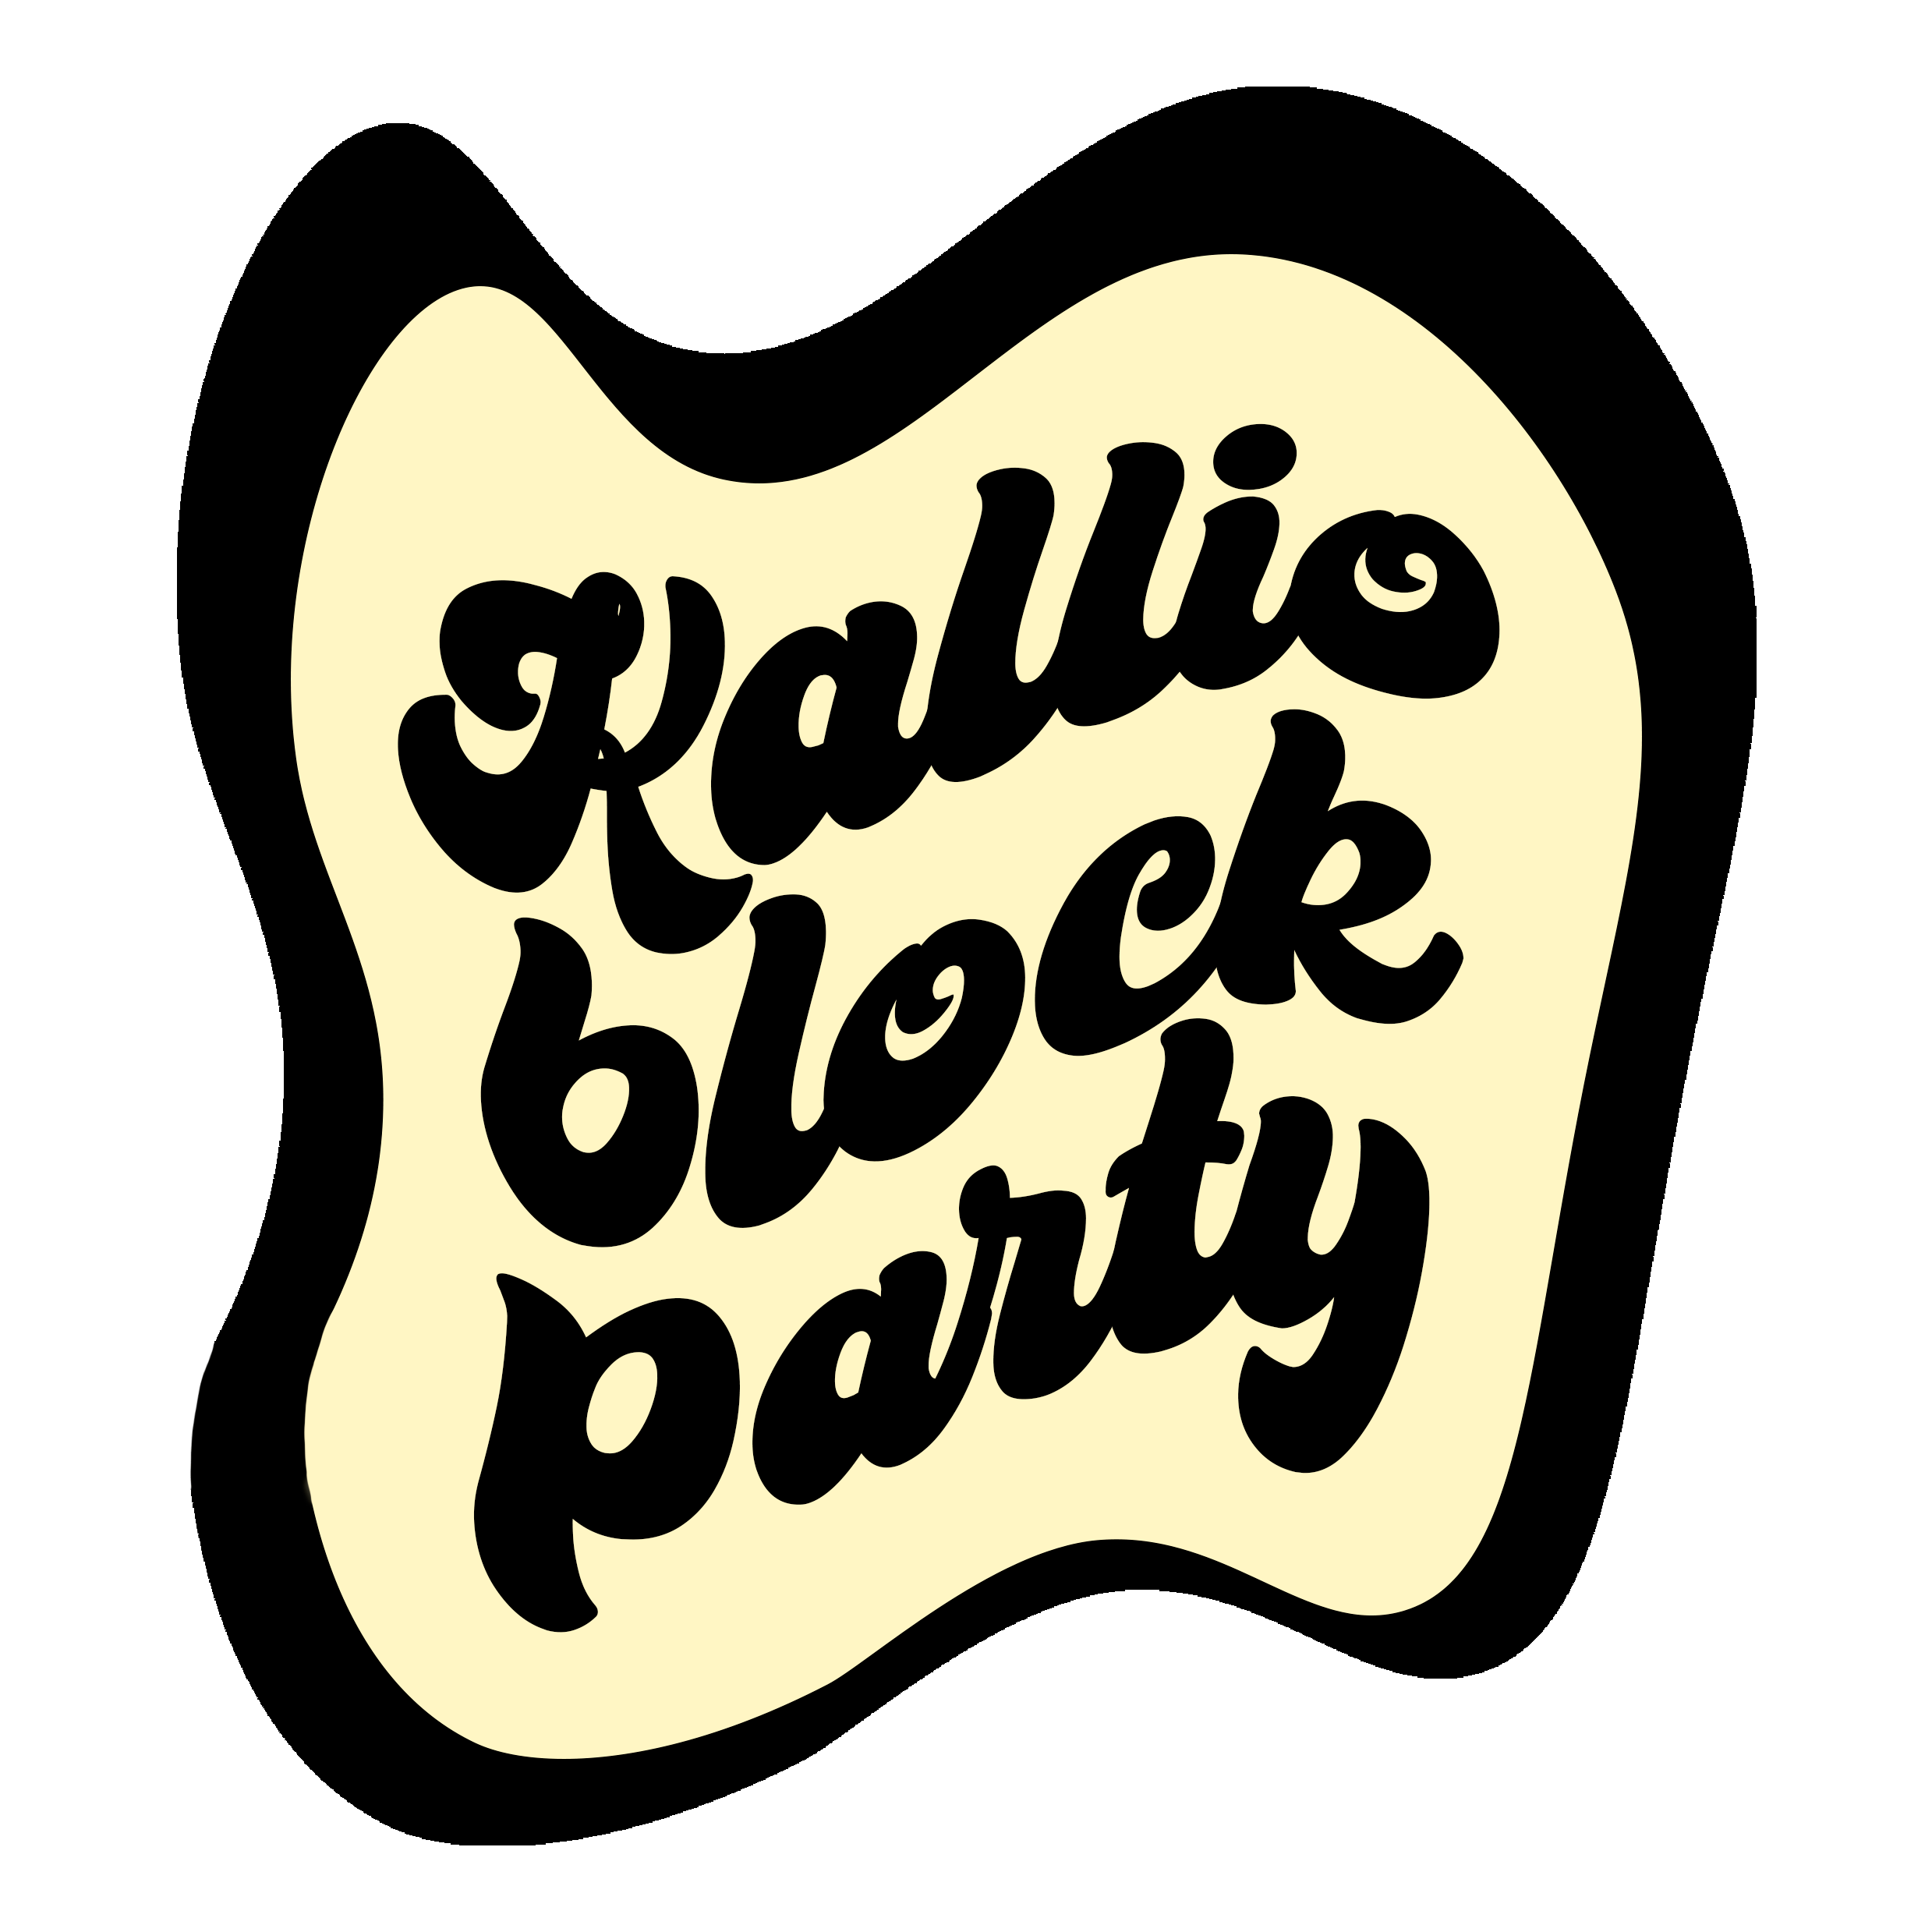 Kallio Block Party